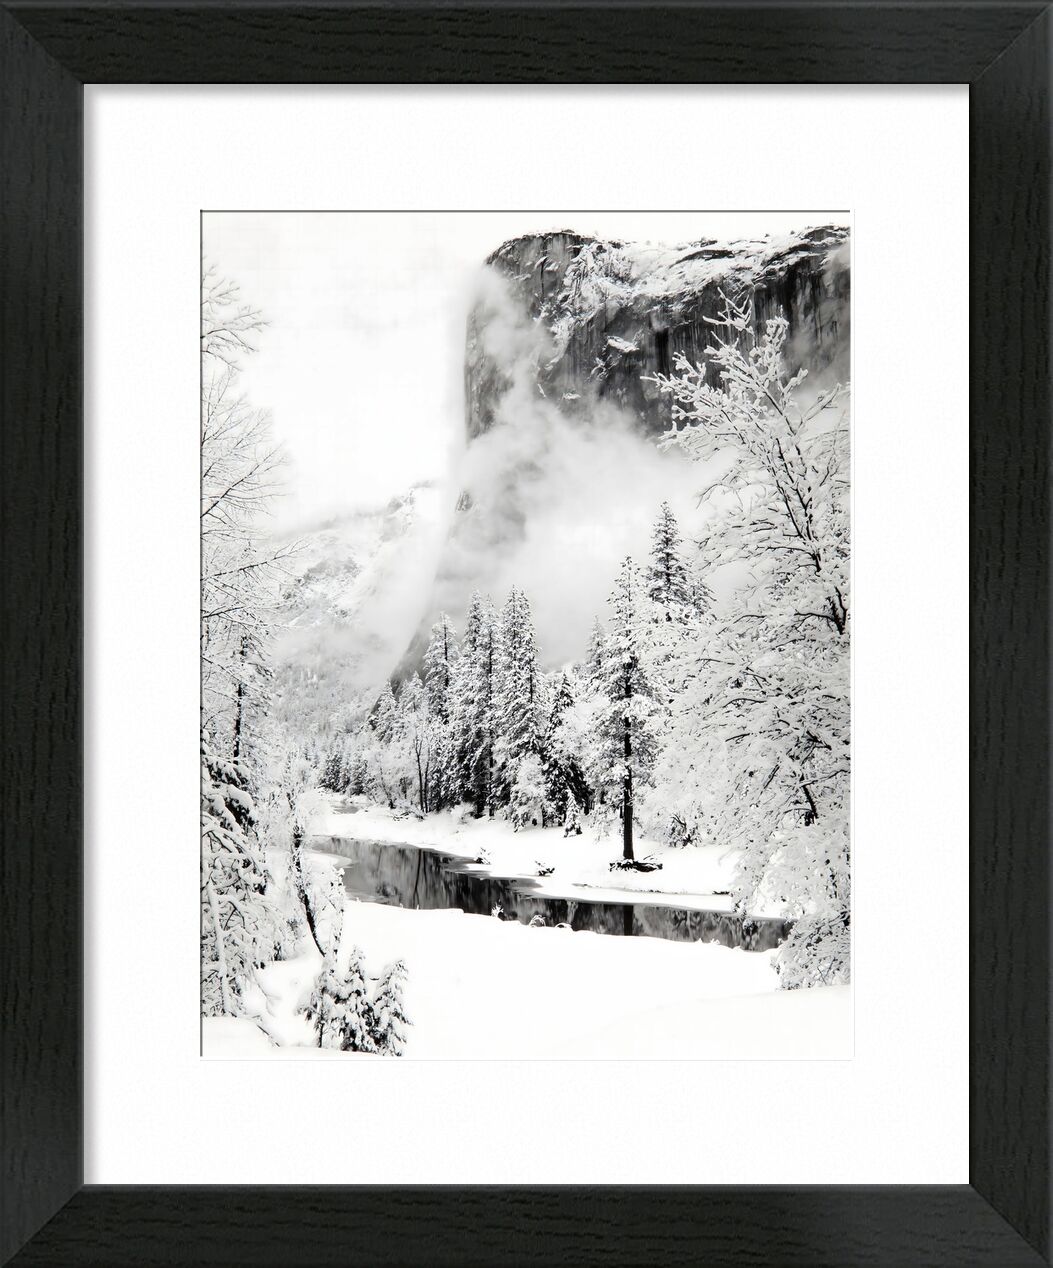 El Capitan, Winter Yosemite National Park, California serie - Ansel Adams desde Bellas artes, Prodi Art, ANSEL ADAMS, nieve, invierno, montañas, río, abeto, esquí